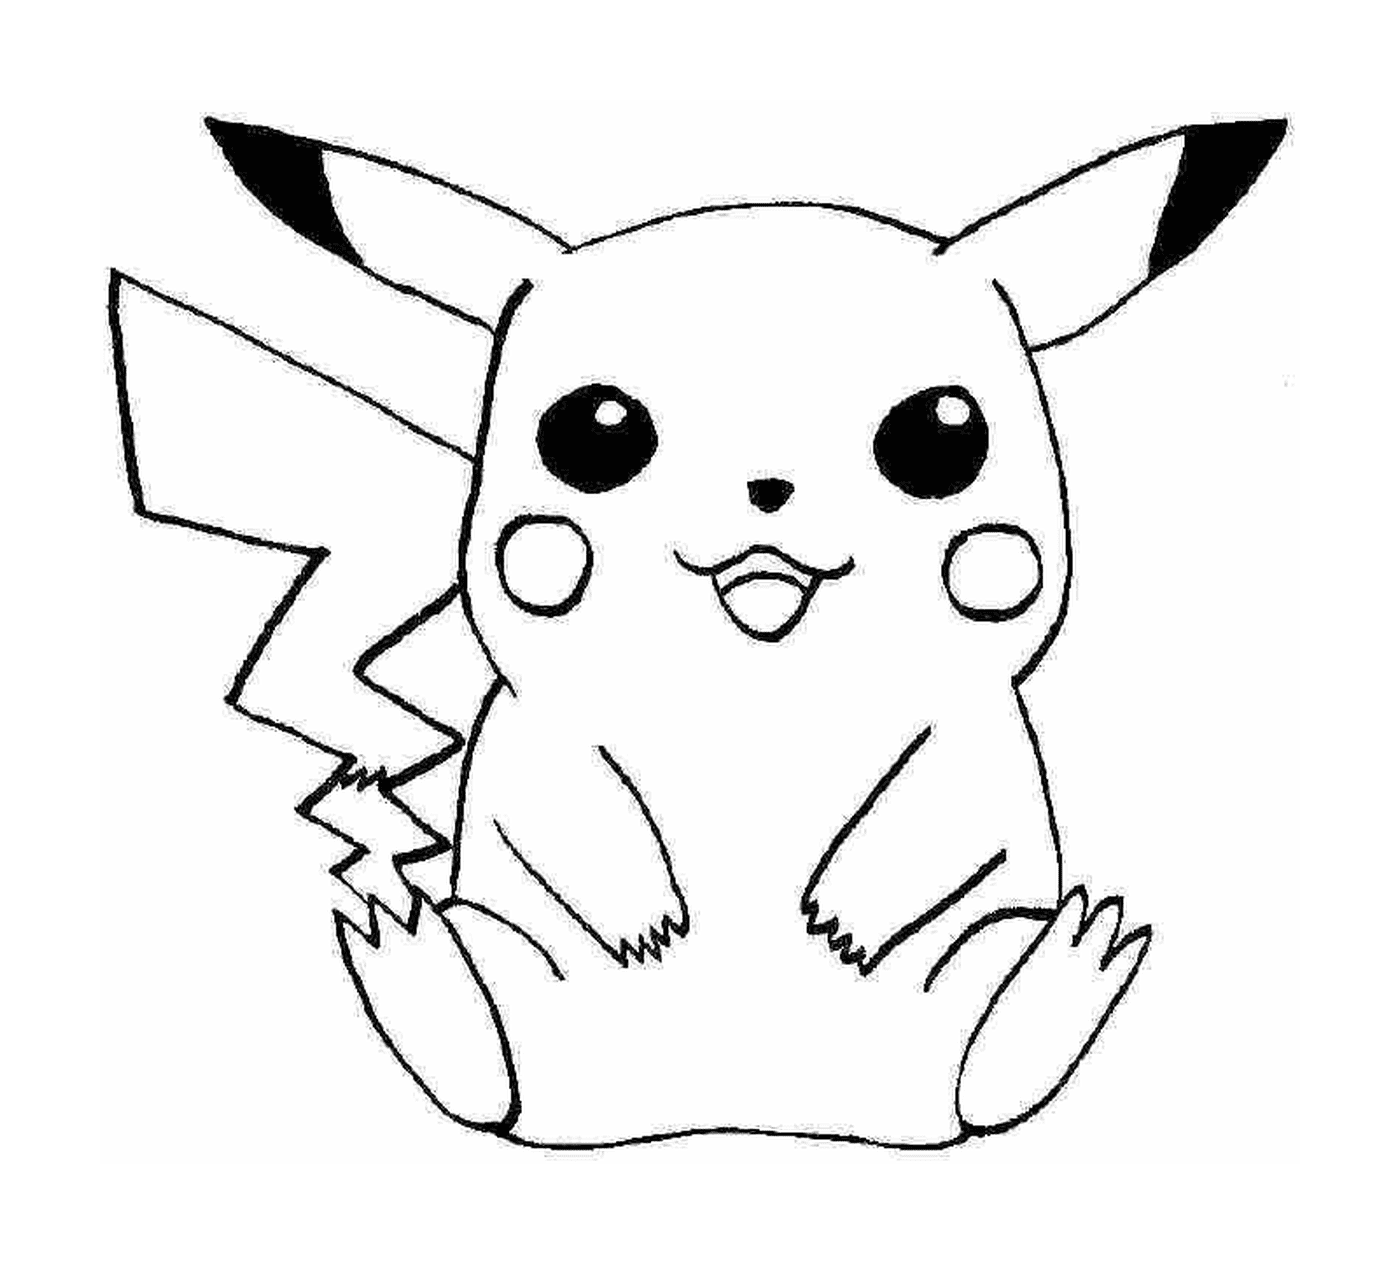   Pikachu, symbole d'adorabilité 